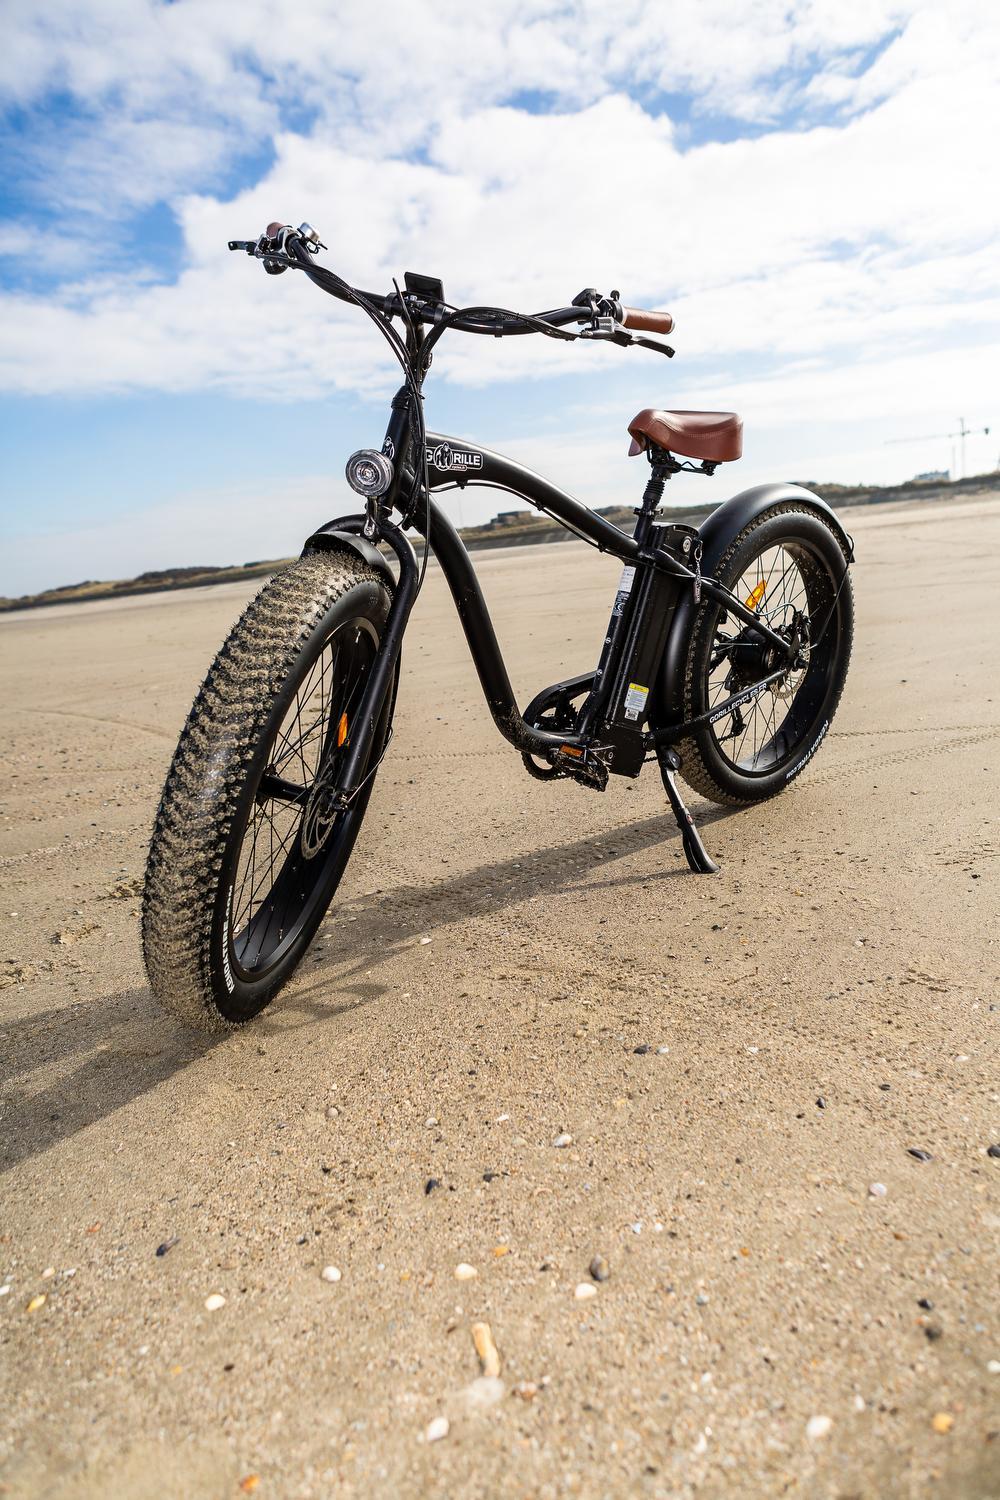 De brede fietsstaander maakt dat je de fiets zelfs rechtop kan zetten in het zand.